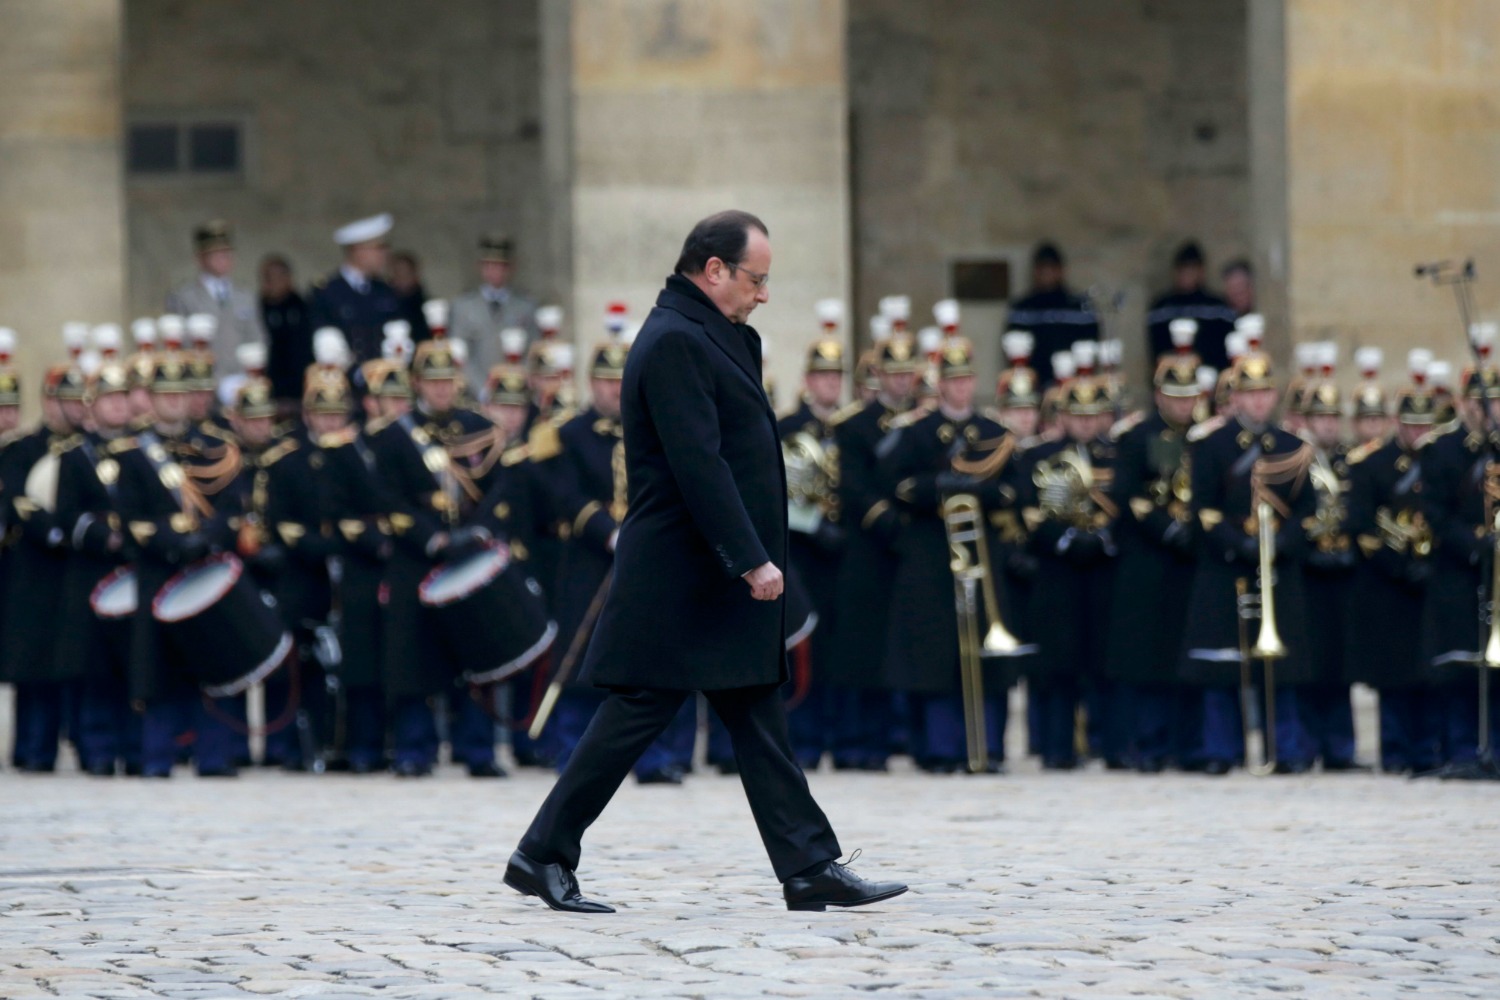 Hollande promete en el homenaje a las víctimas "destruir al ejército de fanáticos" del IS